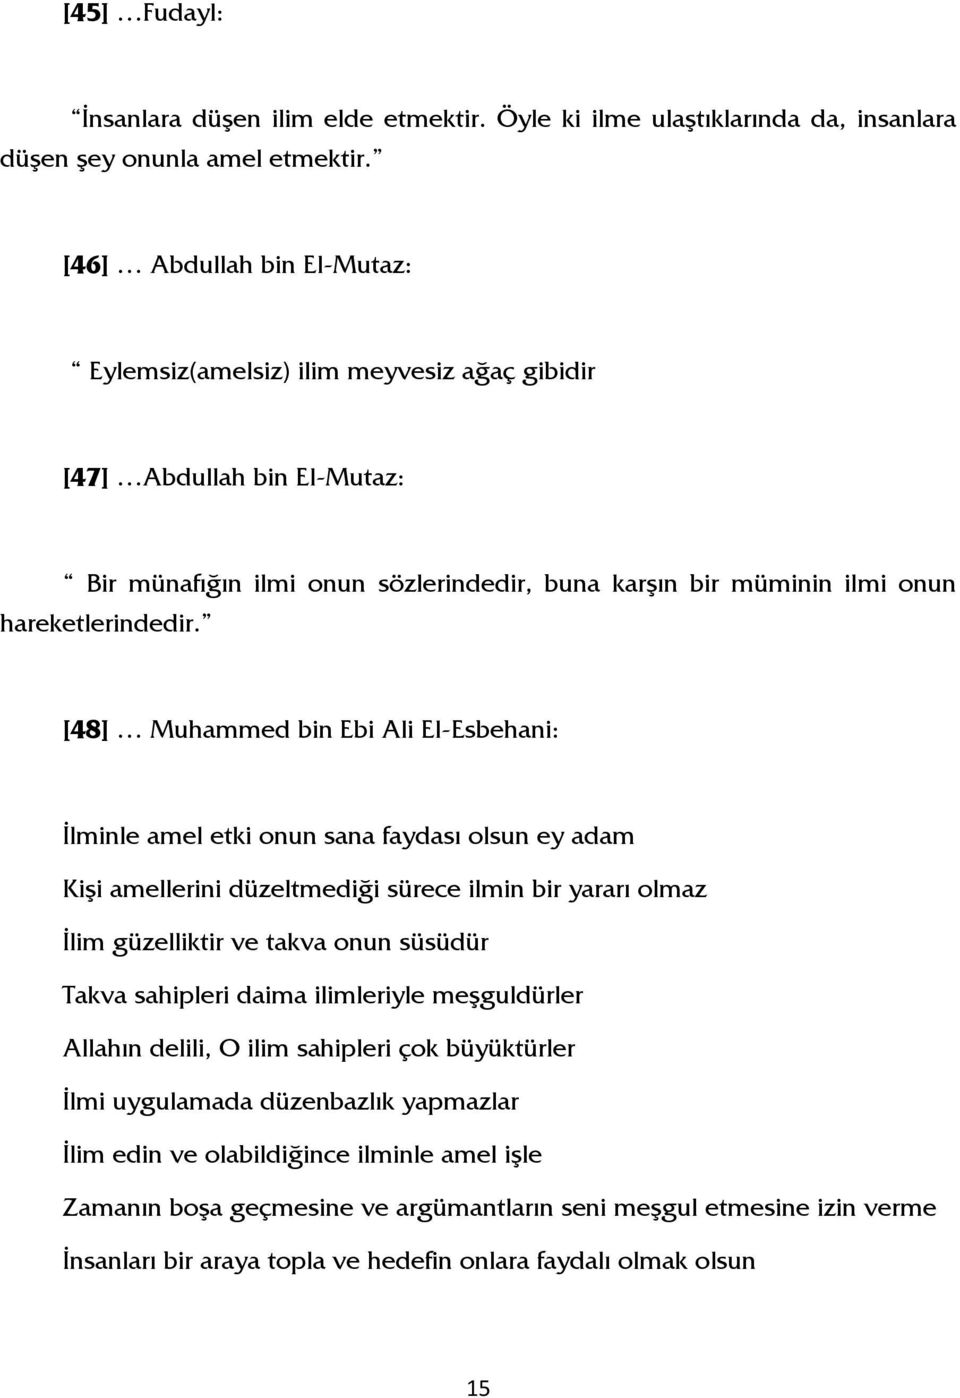 [48] Muhammed bin Ebi Ali El-Esbehani: İlminle amel etki onun sana faydası olsun ey adam Kişi amellerini düzeltmediği sürece ilmin bir yararı olmaz İlim güzelliktir ve takva onun süsüdür Takva